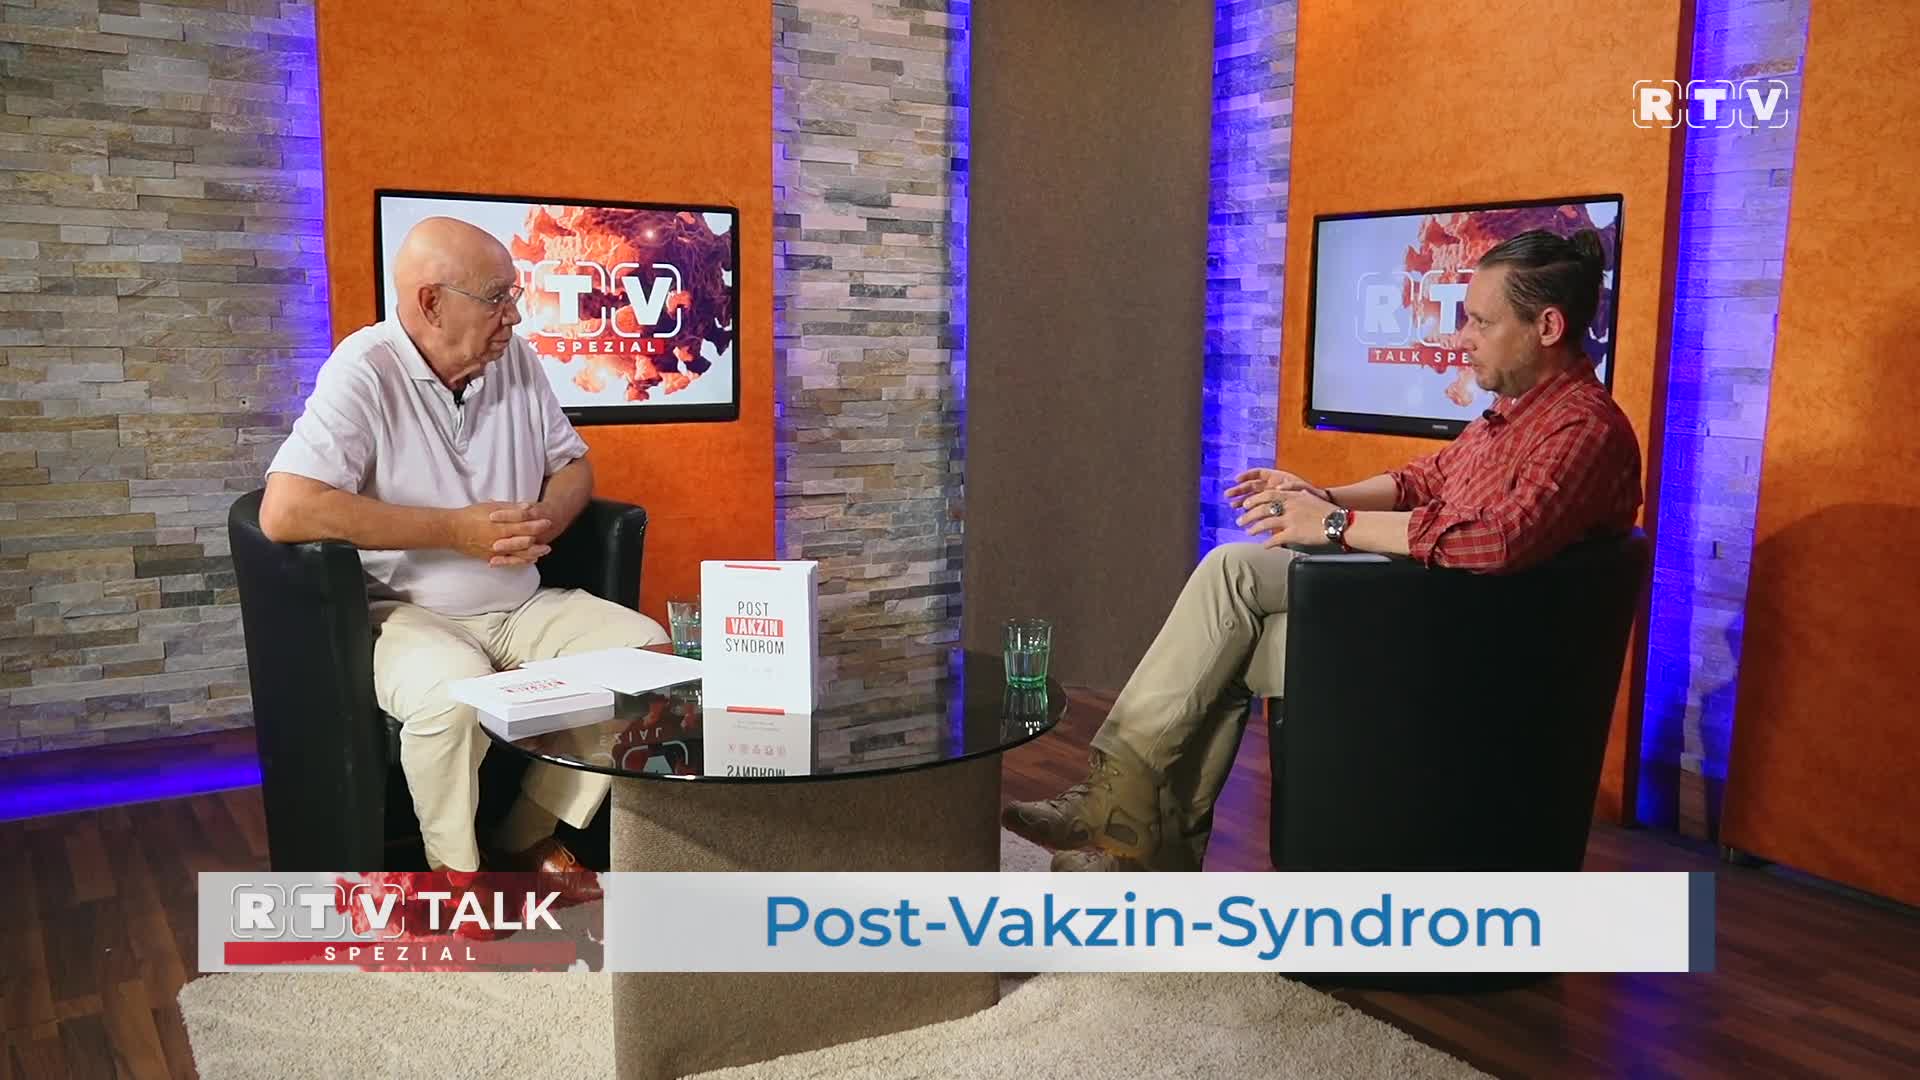 Post-Vakzin-Syndrom – Handbuch für Geschädigte: Vorstellung im RTV Talk mit Autor Florian Schilling